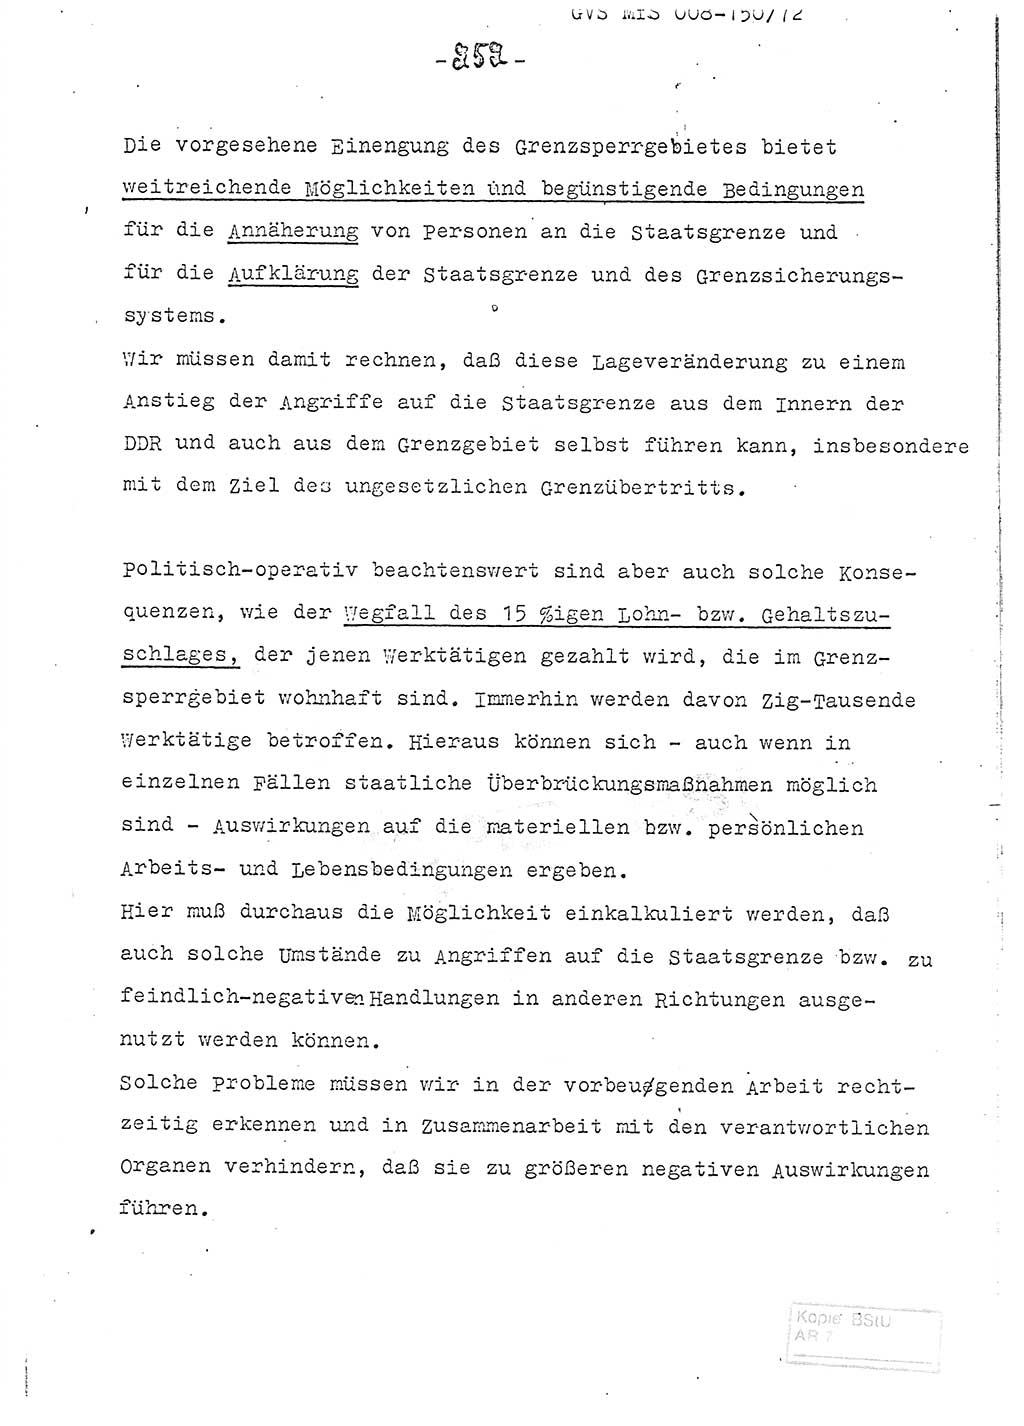 Referat (Entwurf) des Genossen Minister (Generaloberst Erich Mielke) auf der Dienstkonferenz 1972, Ministerium für Staatssicherheit (MfS) [Deutsche Demokratische Republik (DDR)], Der Minister, Geheime Verschlußsache (GVS) 008-150/72, Berlin 25.2.1972, Seite 252 (Ref. Entw. DK MfS DDR Min. GVS 008-150/72 1972, S. 252)